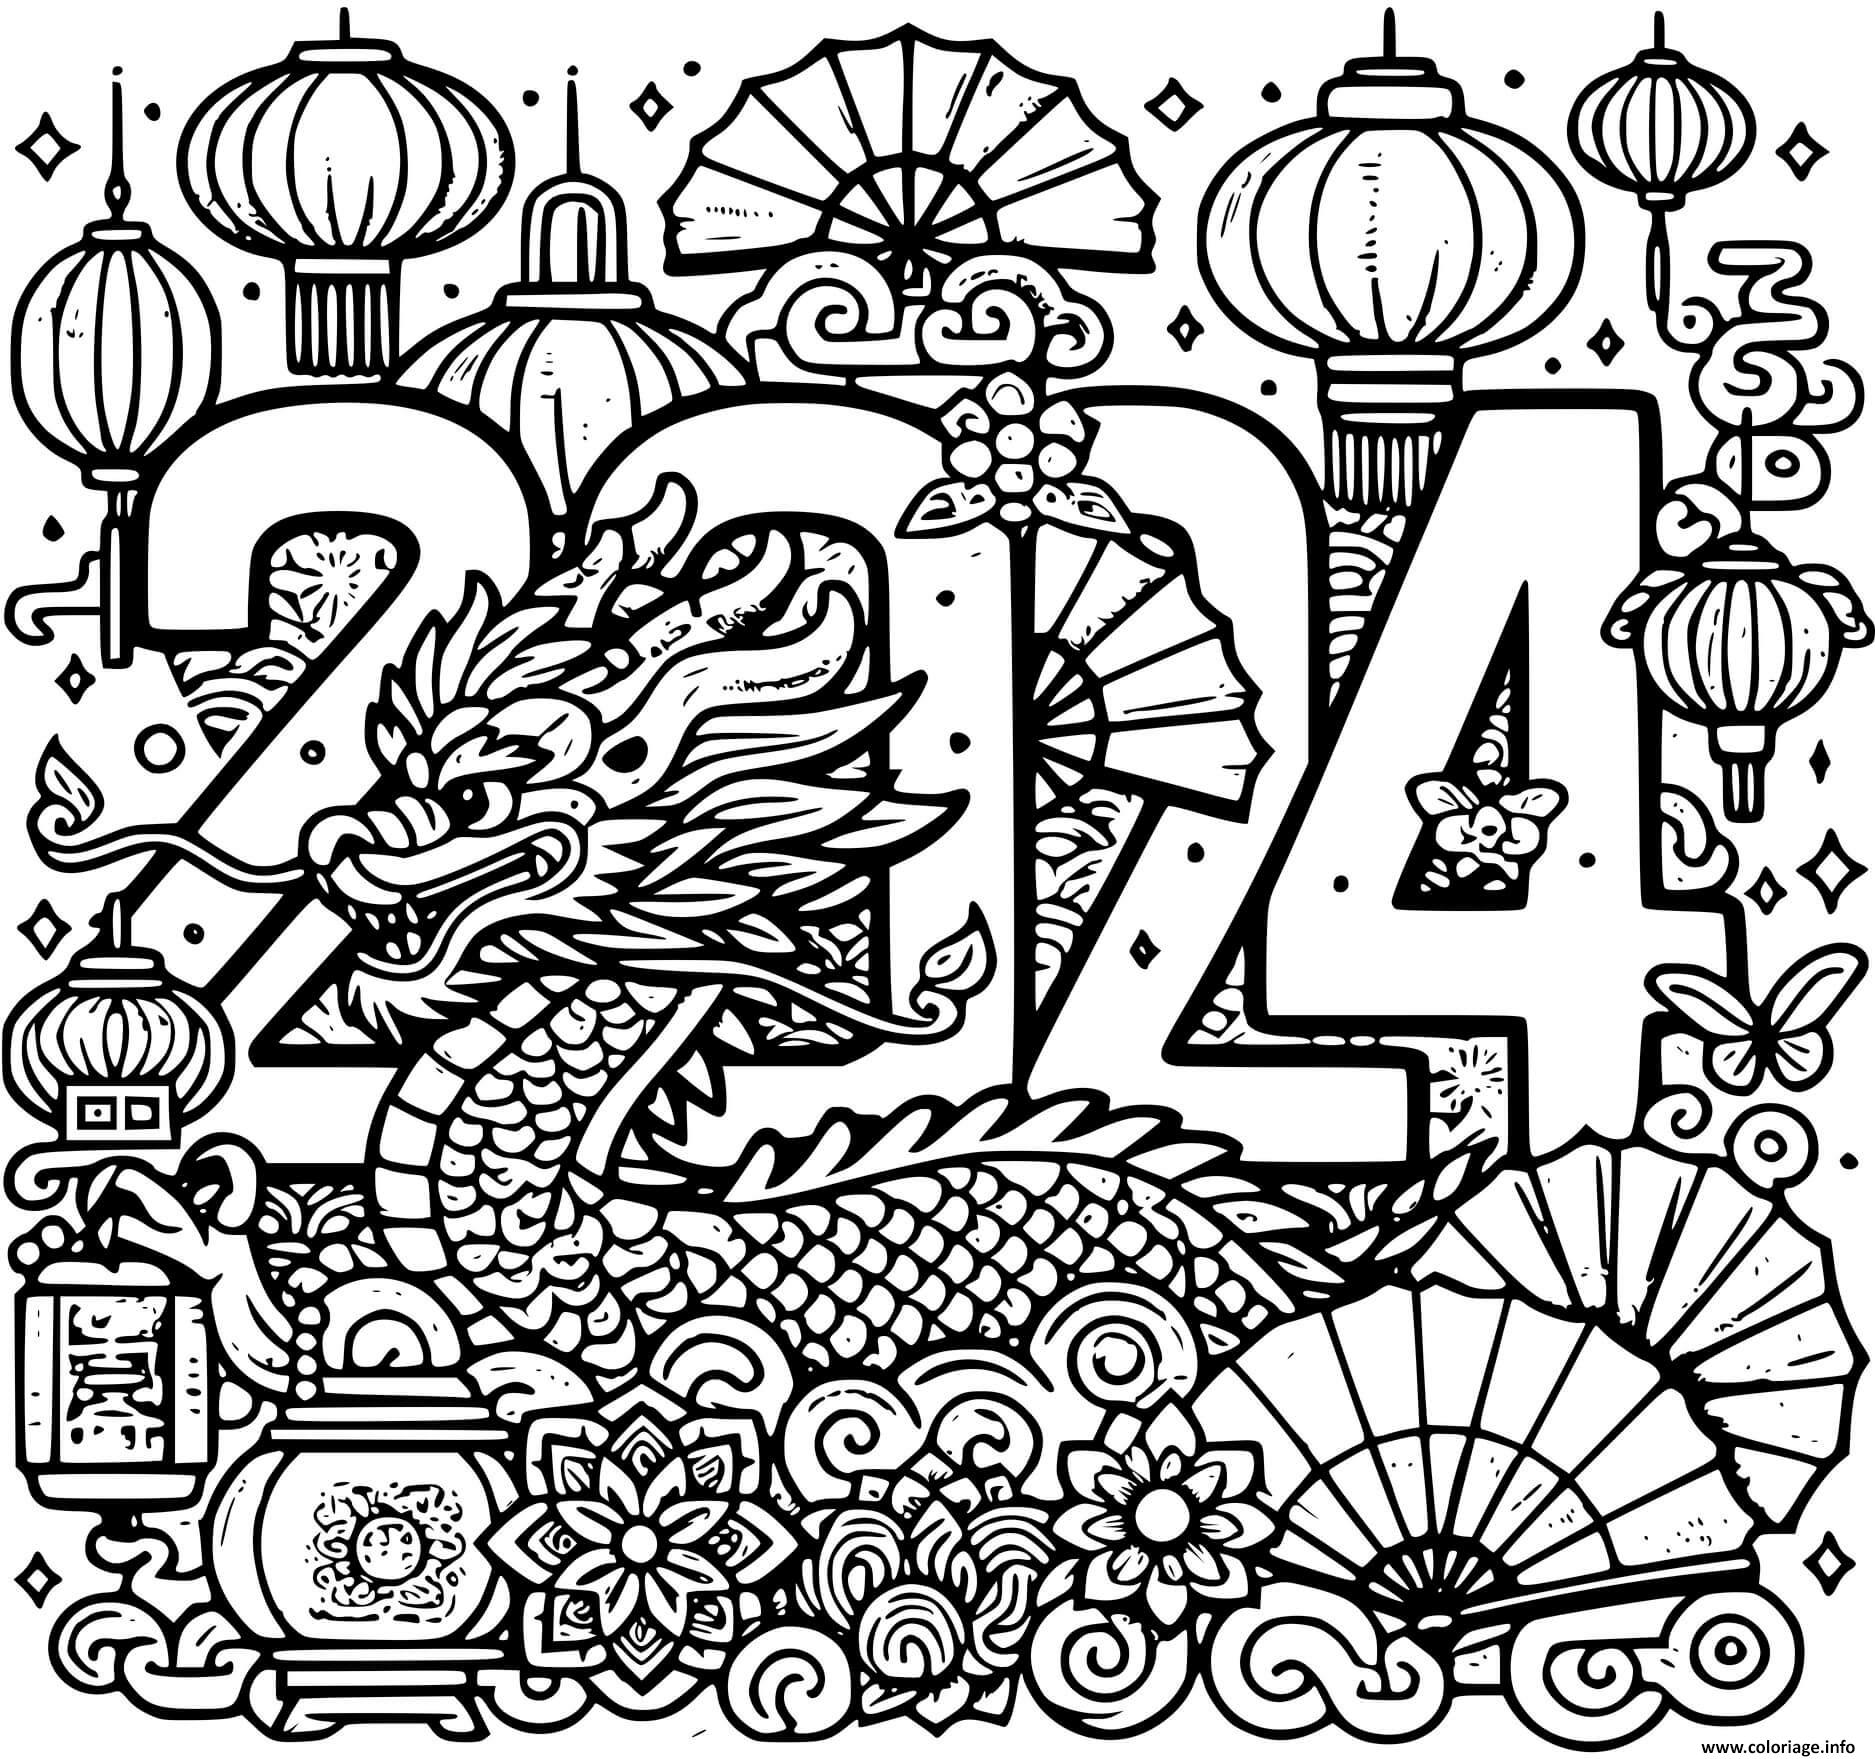 Dessin nouvel an chinois dragon lunaire dragon facile Coloriage Gratuit à Imprimer